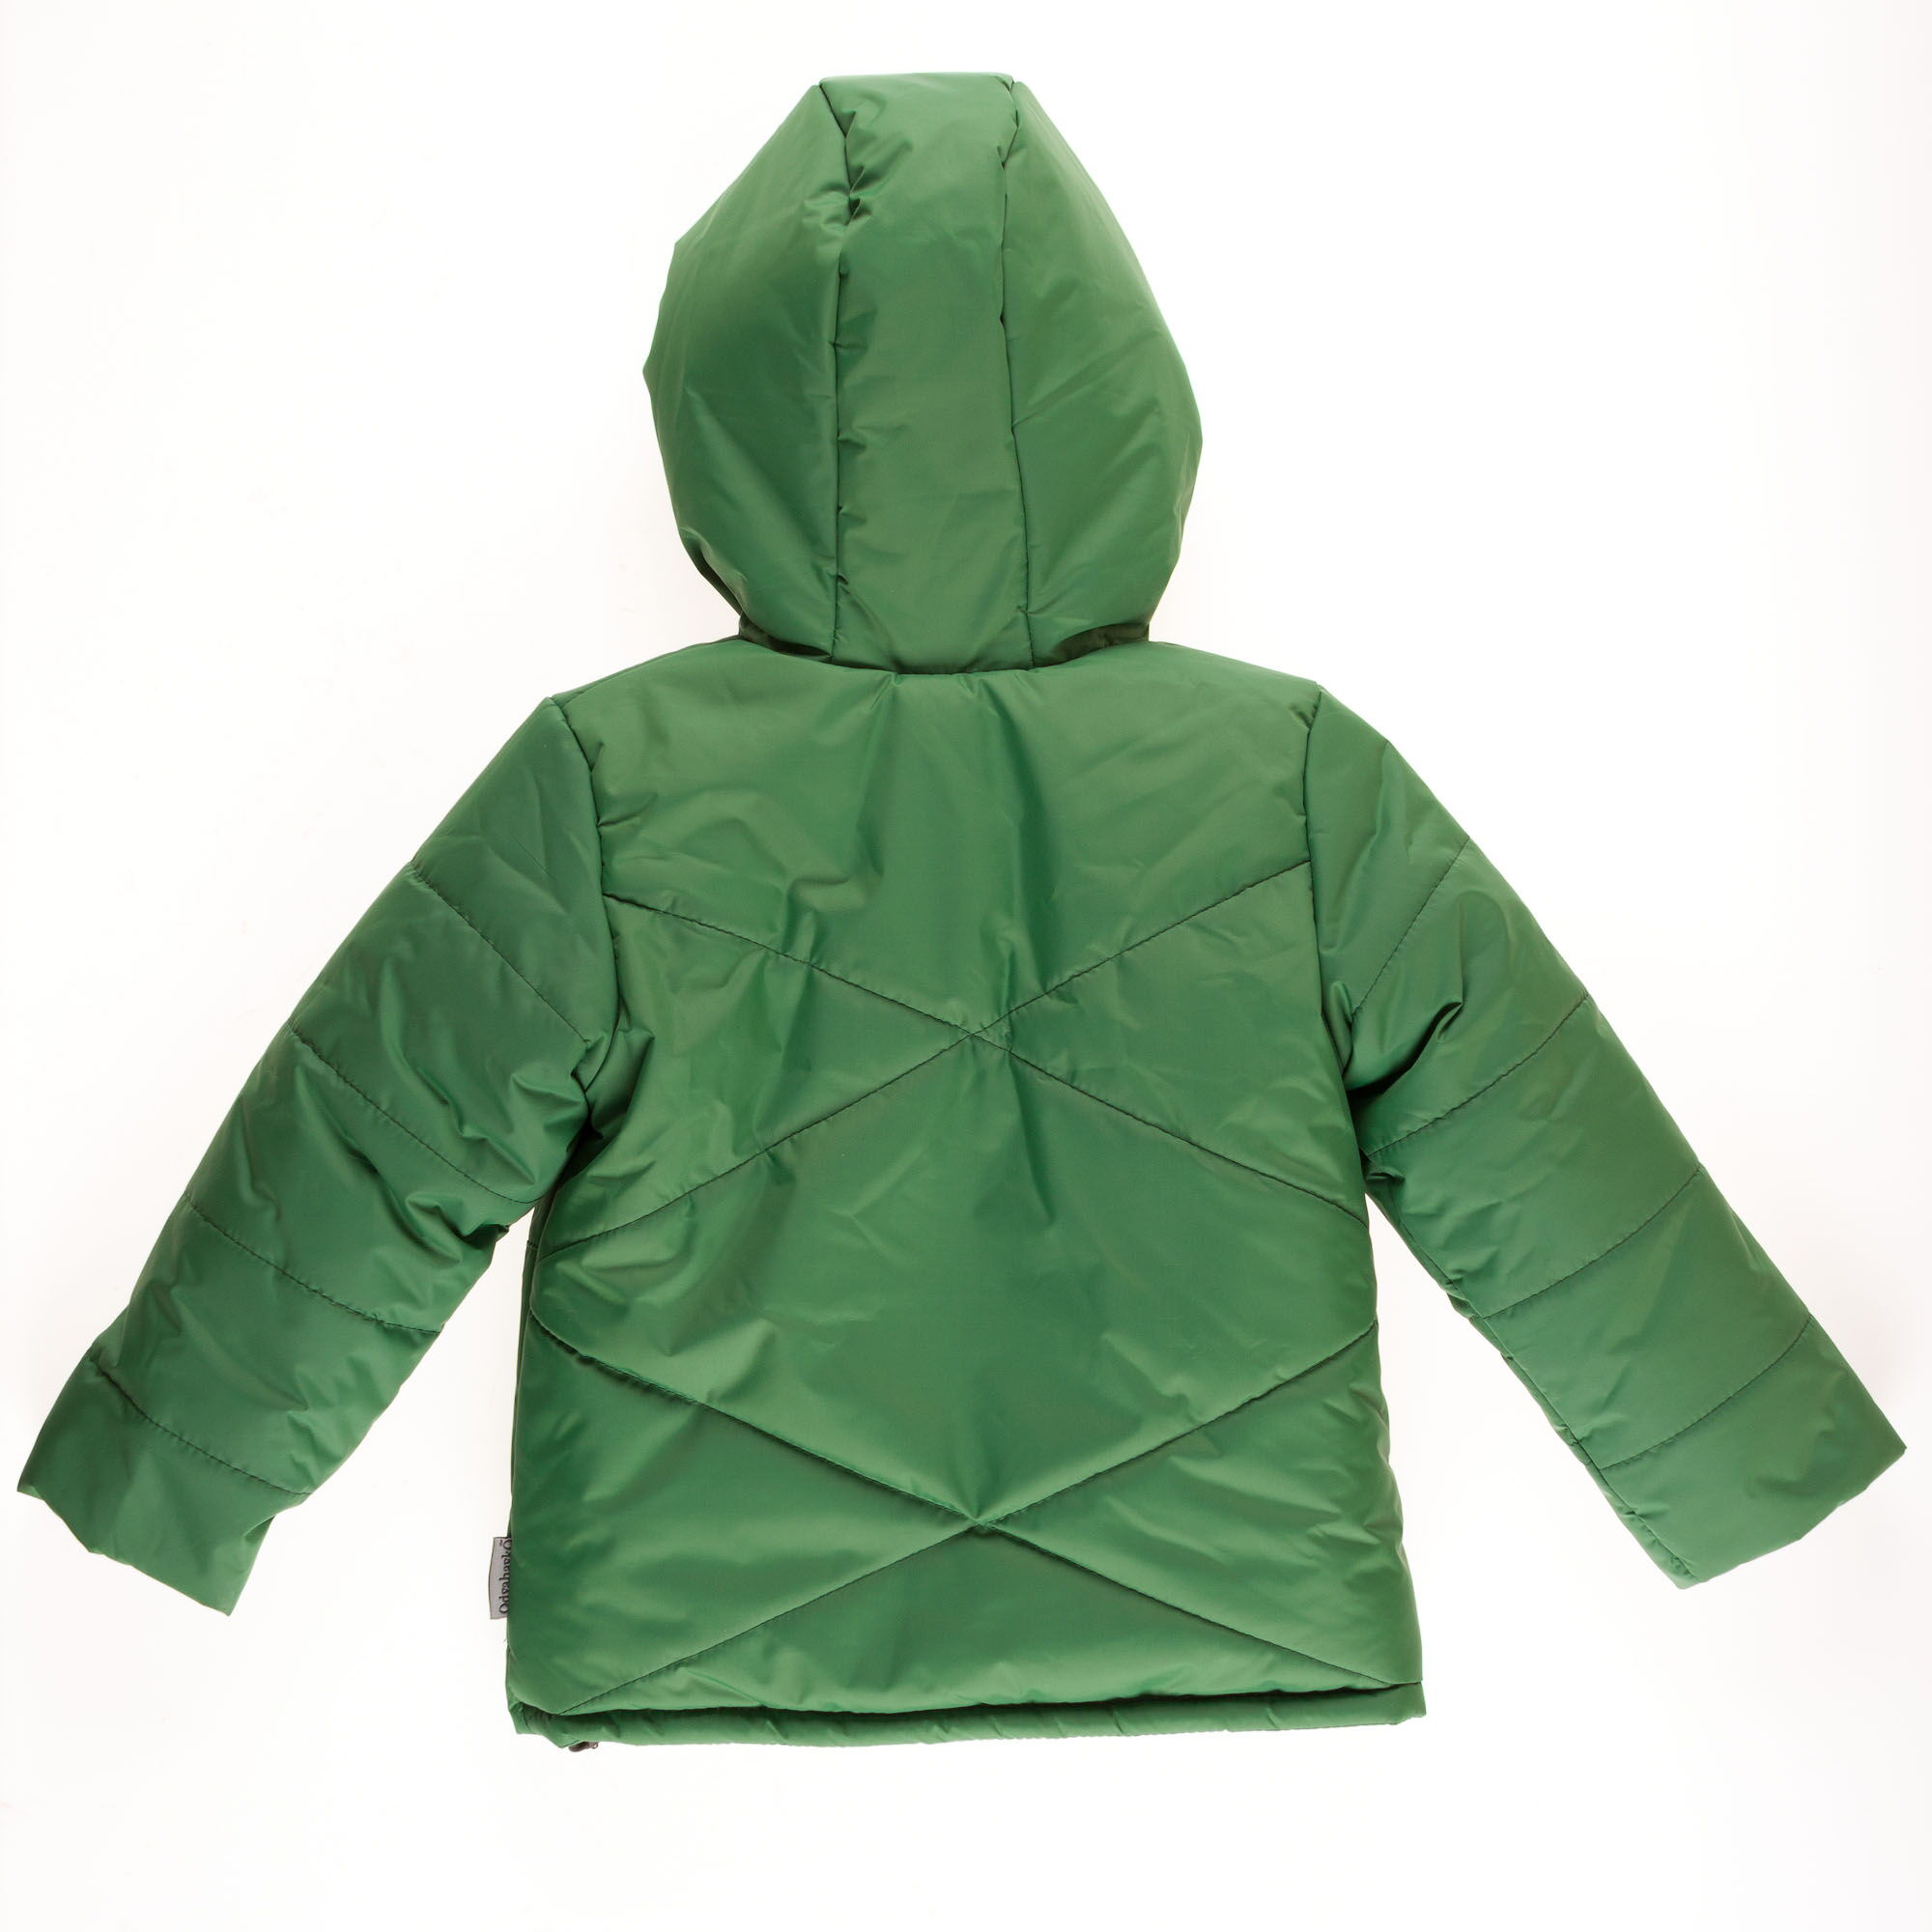 Куртка зимняя для мальчика Одягайко зеленая 20094 - размеры